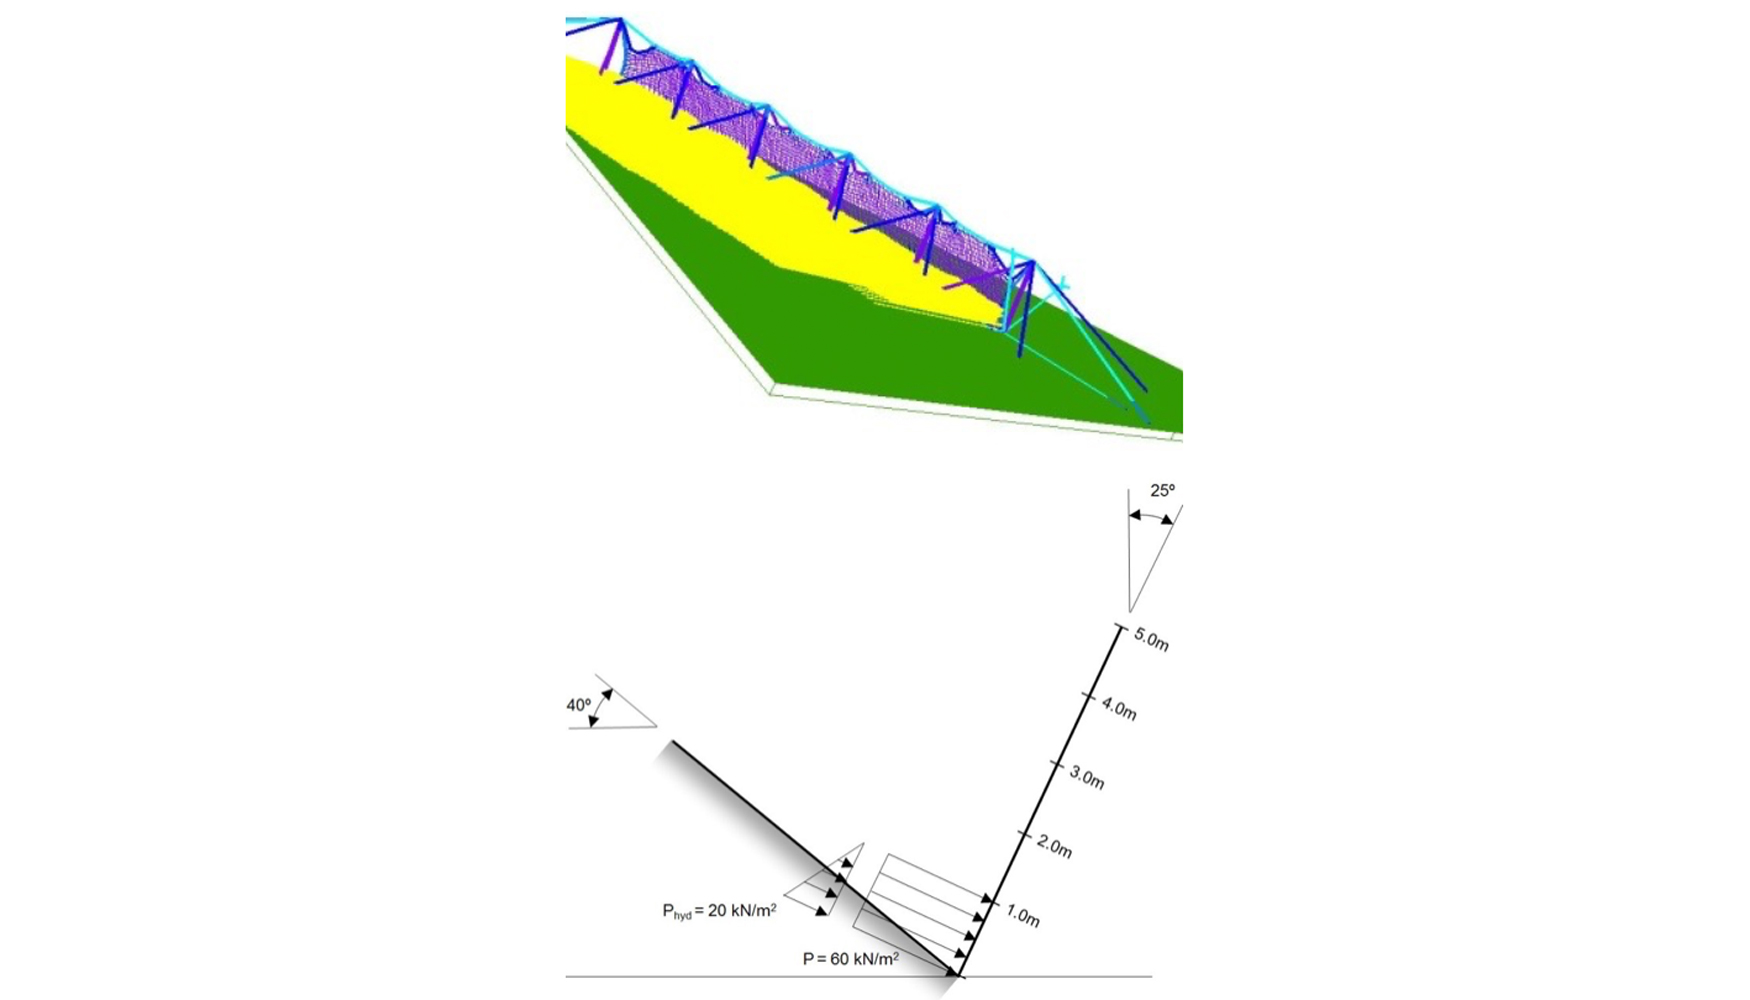 Figura 7. Primer caso de carga sobre la barrera: presin de impacto de 60 kN/m2 actuando sobre una altura flujo de 1 m...